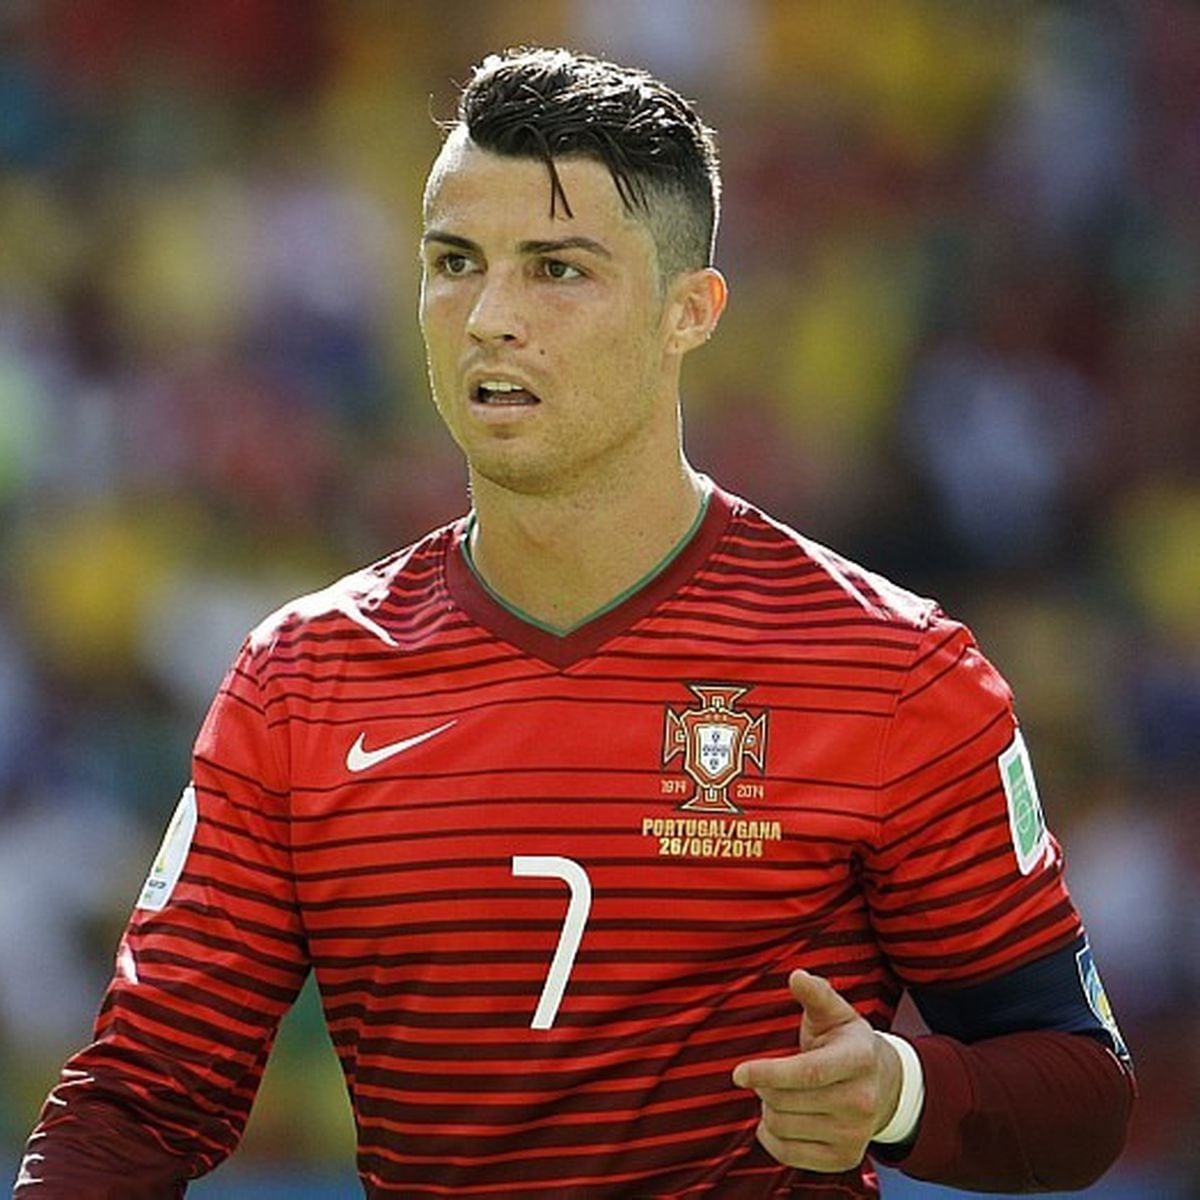 Temos o melhor jogador do mundo, Ronaldo, e vamos mantê-lo» - CNN Portugal